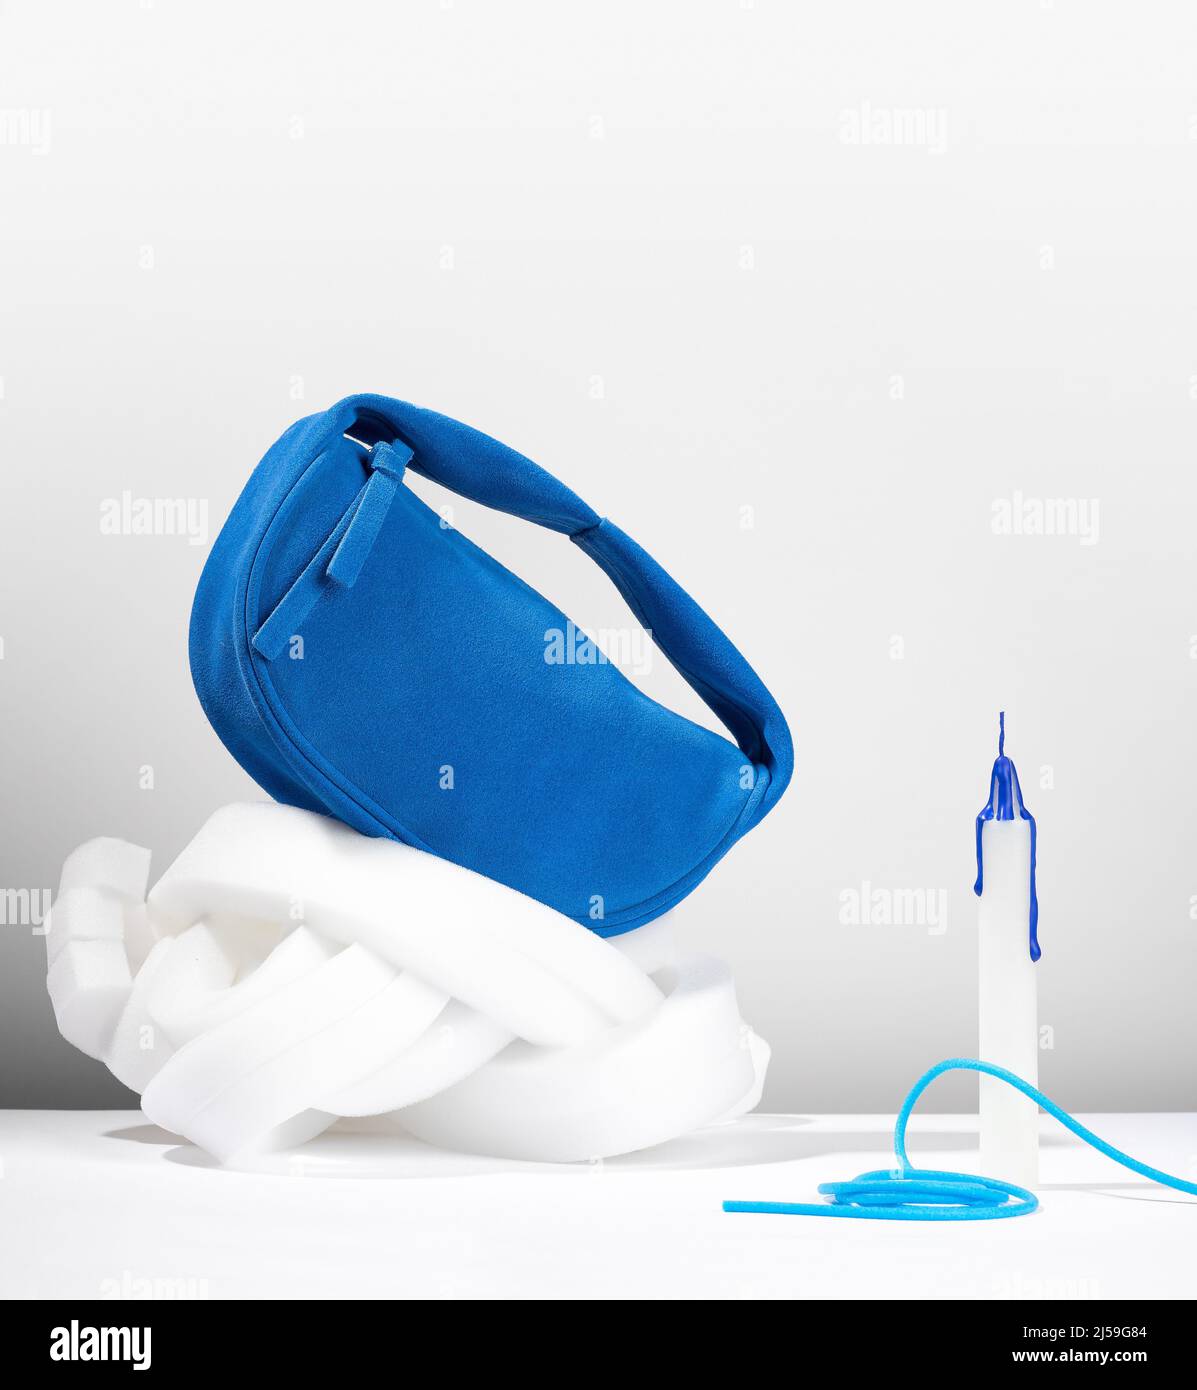 Pochette blu cobalto realizzata in pelle scamosciata artificiale su sfondo  bianco puro. Composizione astratta con una piccola borsa blu in camoscio  faux Foto stock - Alamy